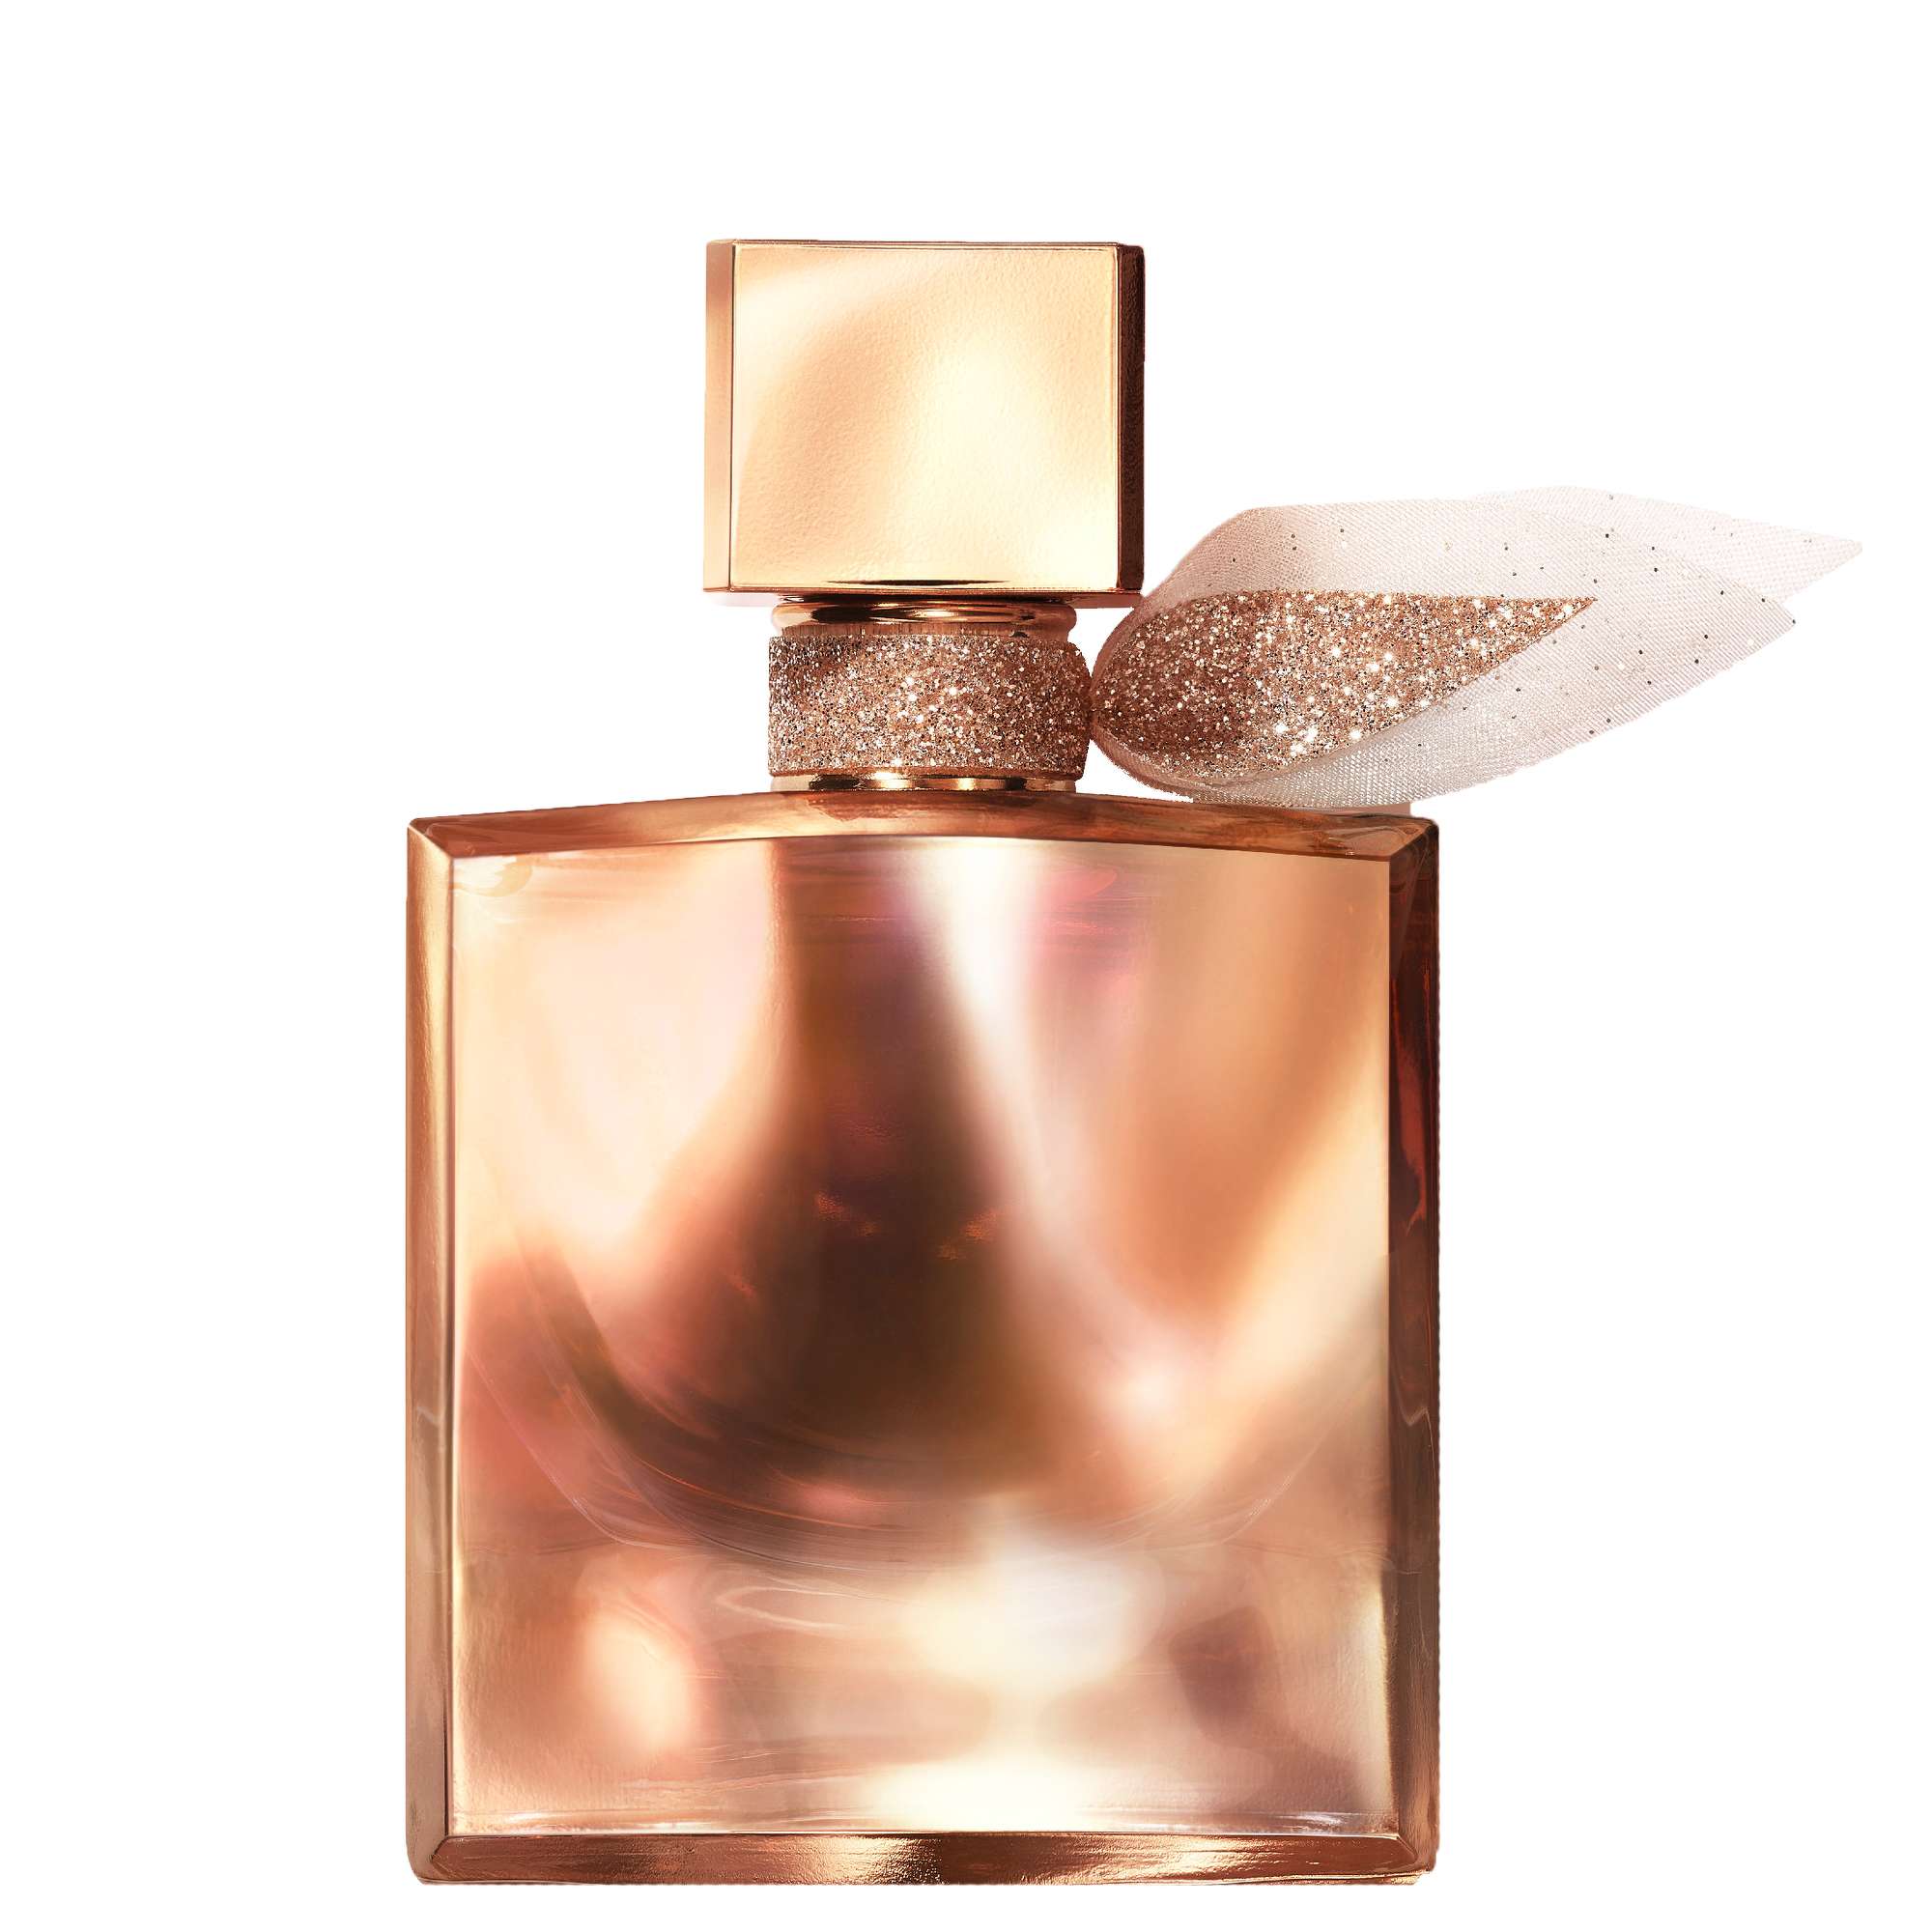 Photos - Women's Fragrance Lancome La Vie Est Belle L'Extrait Eau de Parfum Spray 30ml 